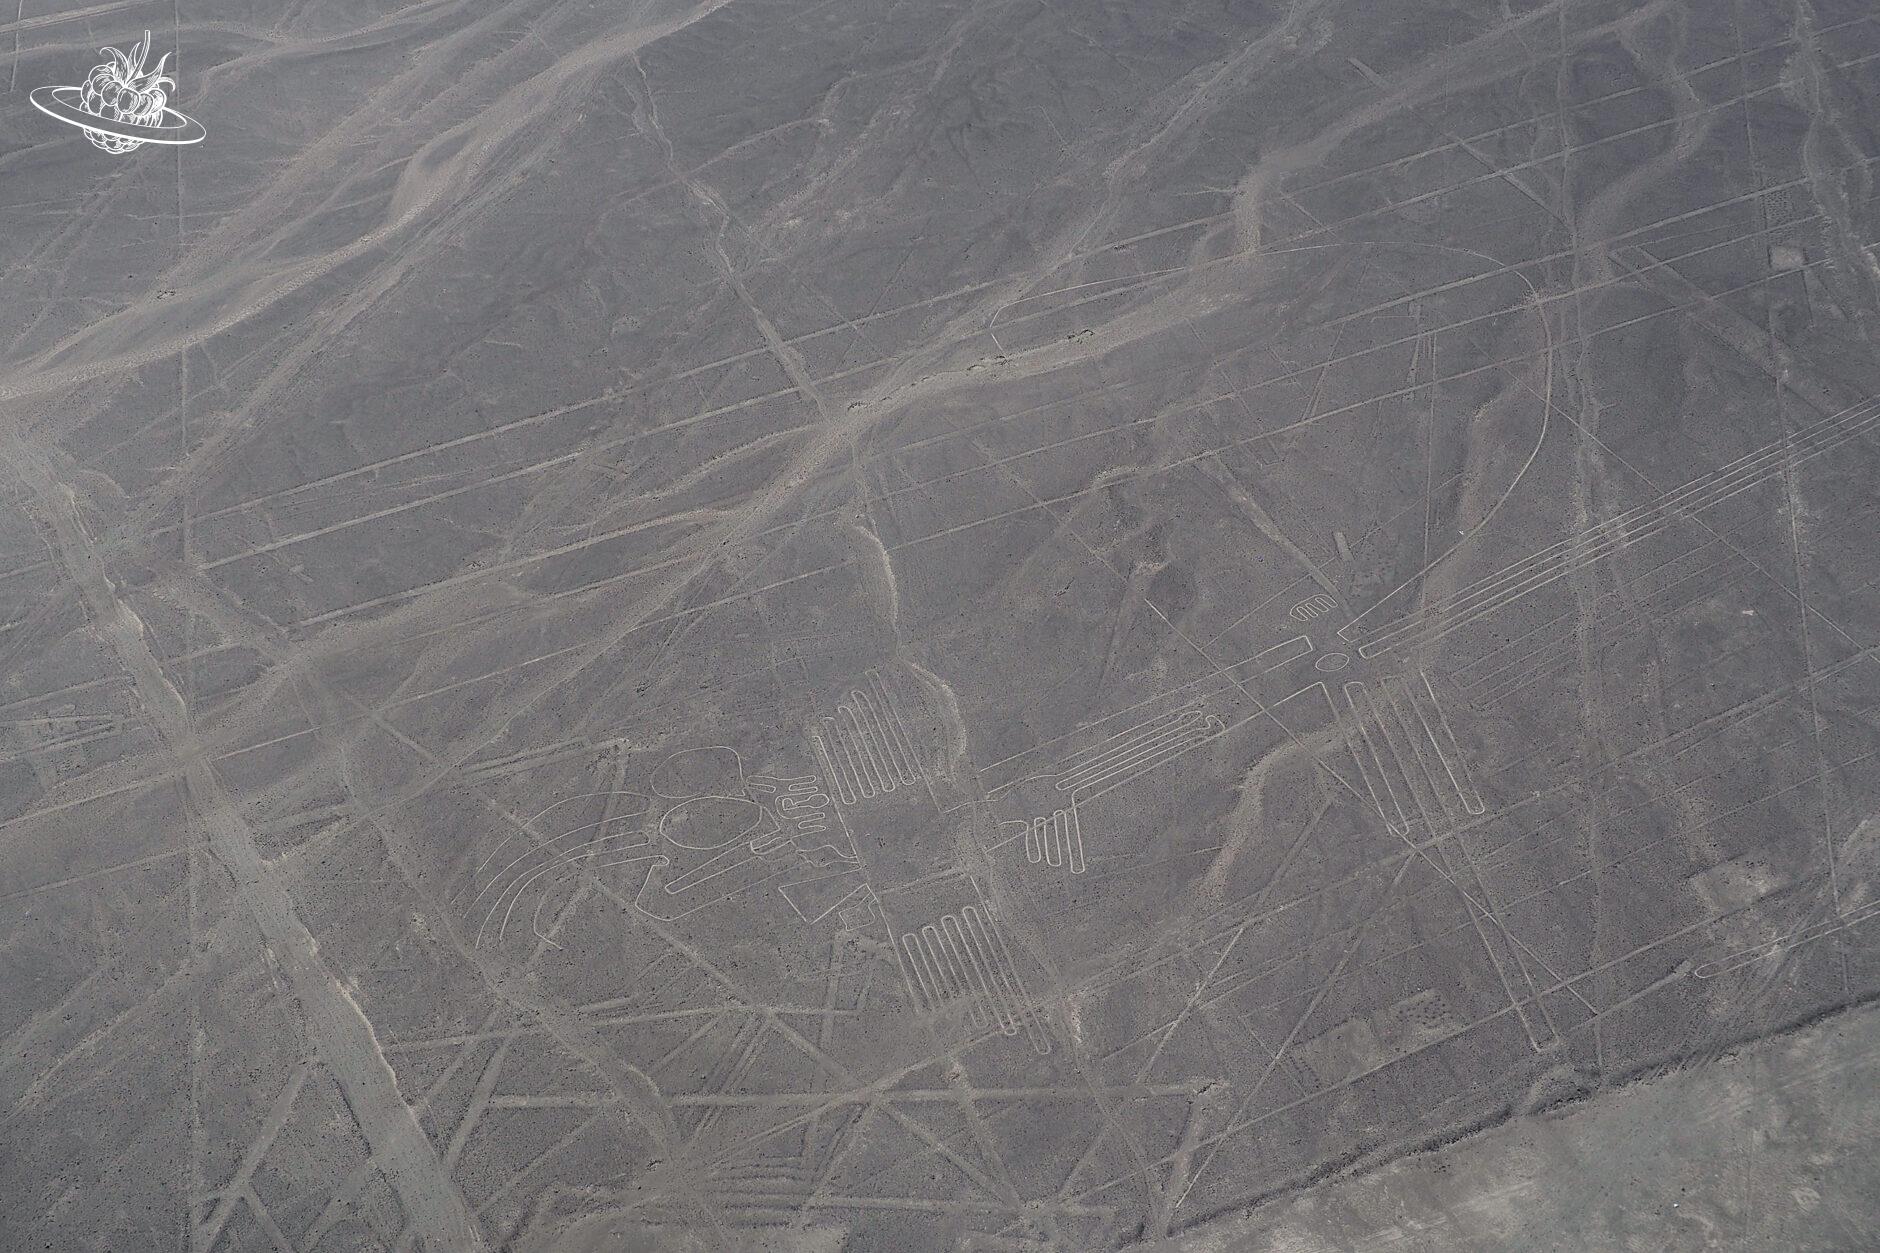 Die Figur "Wespe" in der Wüste von Nazca